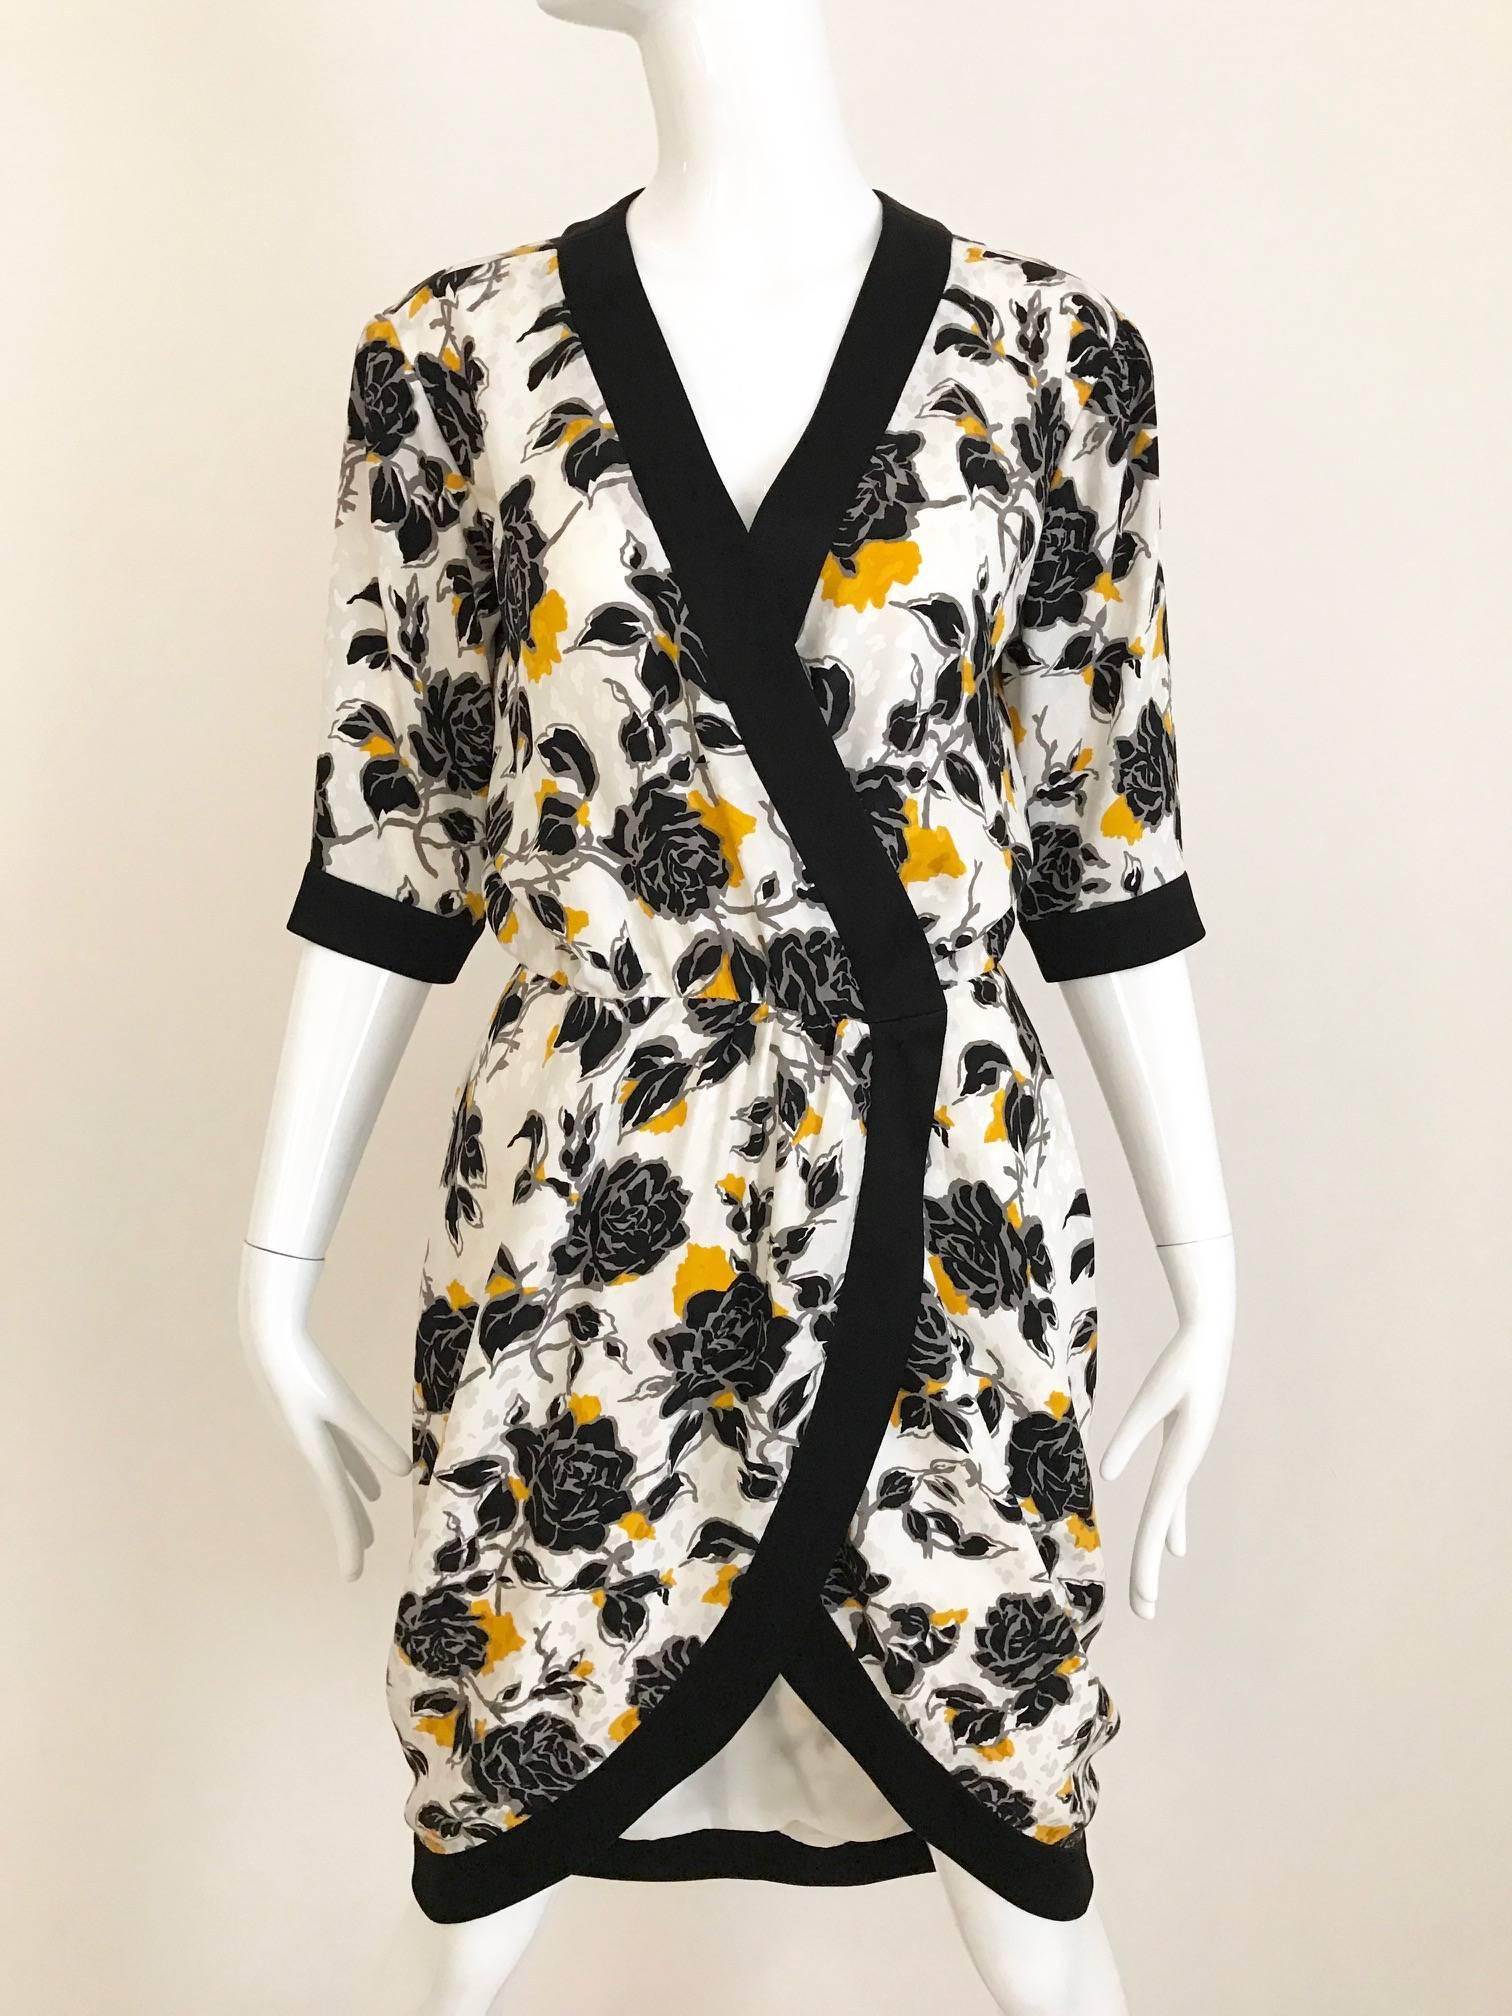 robe d'été vintage Yves Saint Laurent des années 80 en soie imprimée de roses blanches, noires et jaunes. Passepoil de soie noir sur les manches et le col en V. Fermeture à crochet et à œil. 
La robe est assortie d'une ceinture en cuir réglable